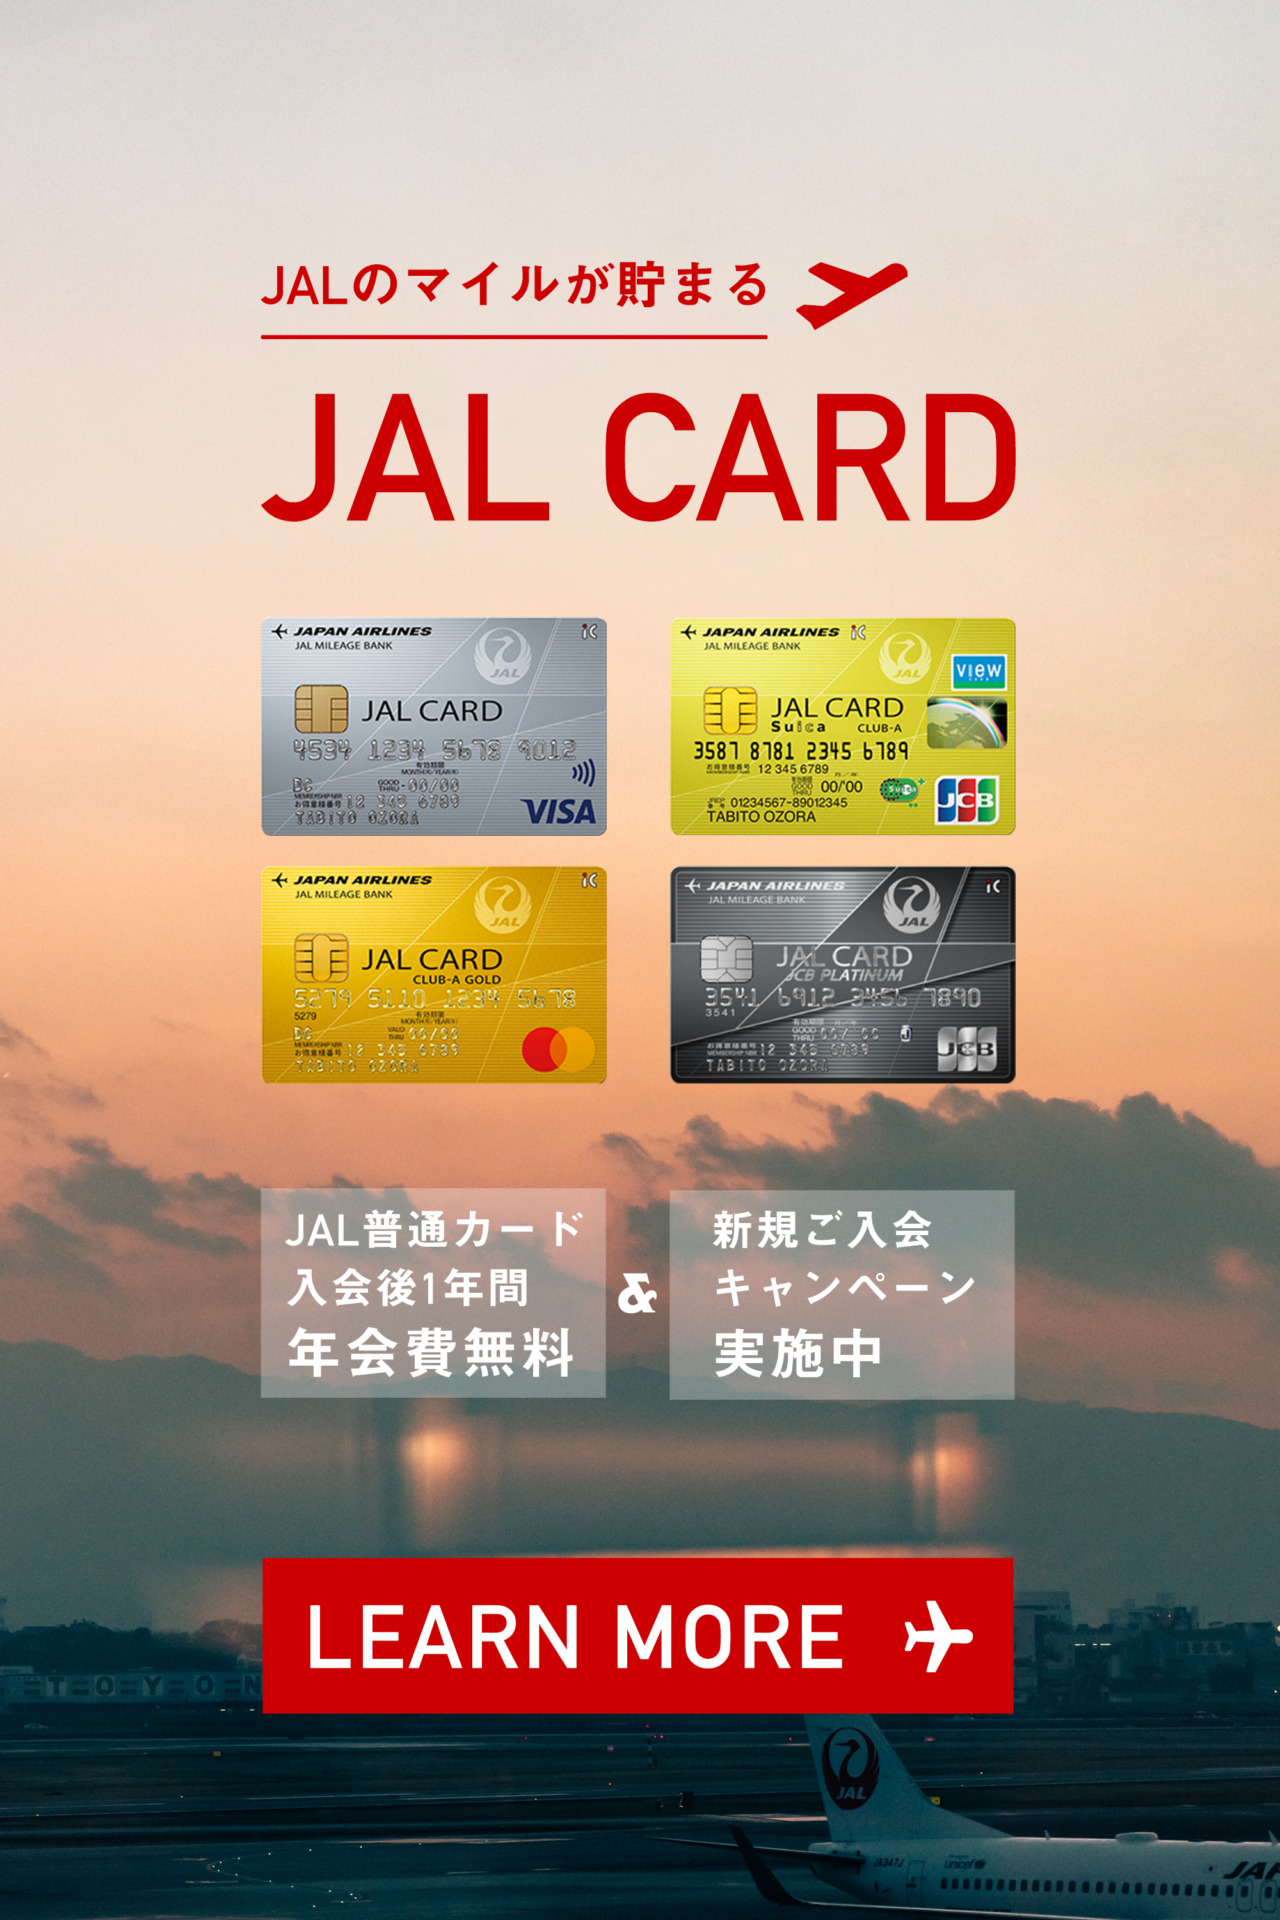 JALマイルが貯まるクレジットカード「JALカード」の年会費比較と選び方